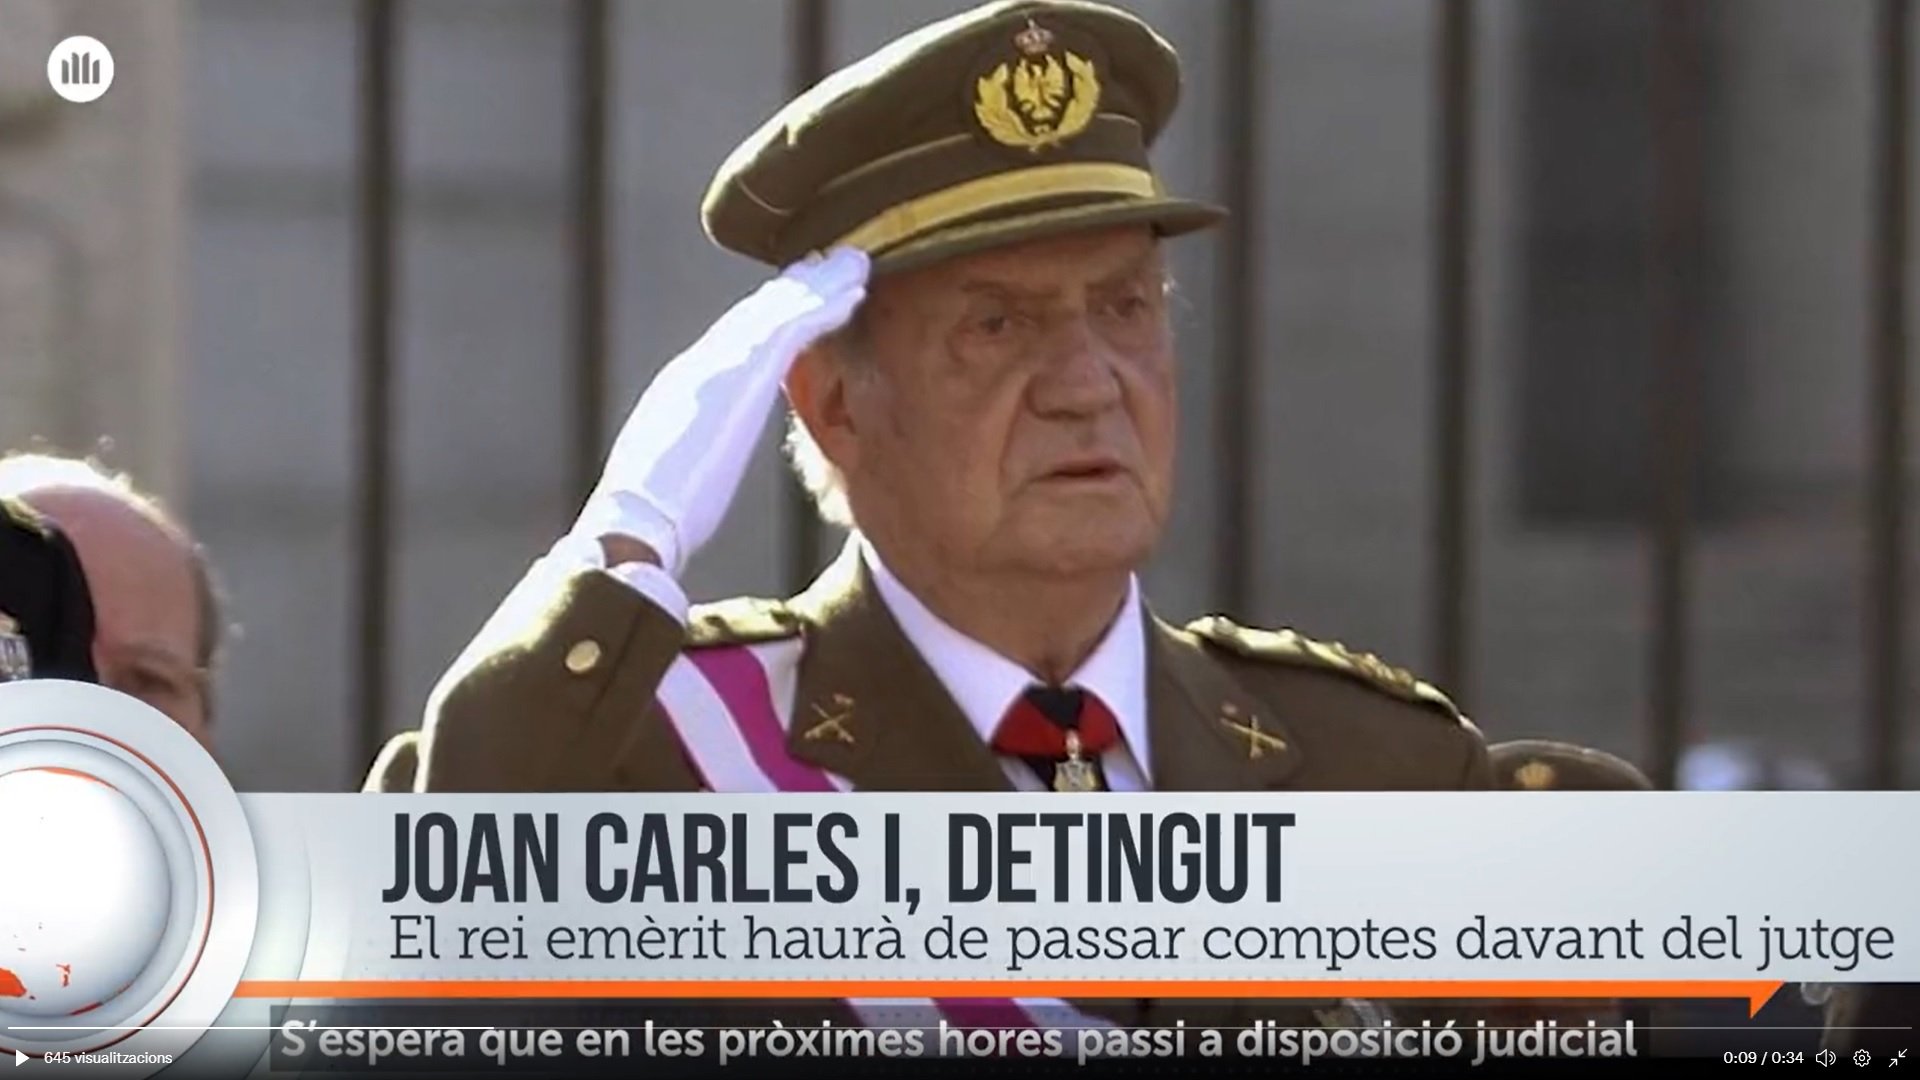 Òmnium "detiene" al rey Juan Carlos I justo después de volver a España | VÍDEO